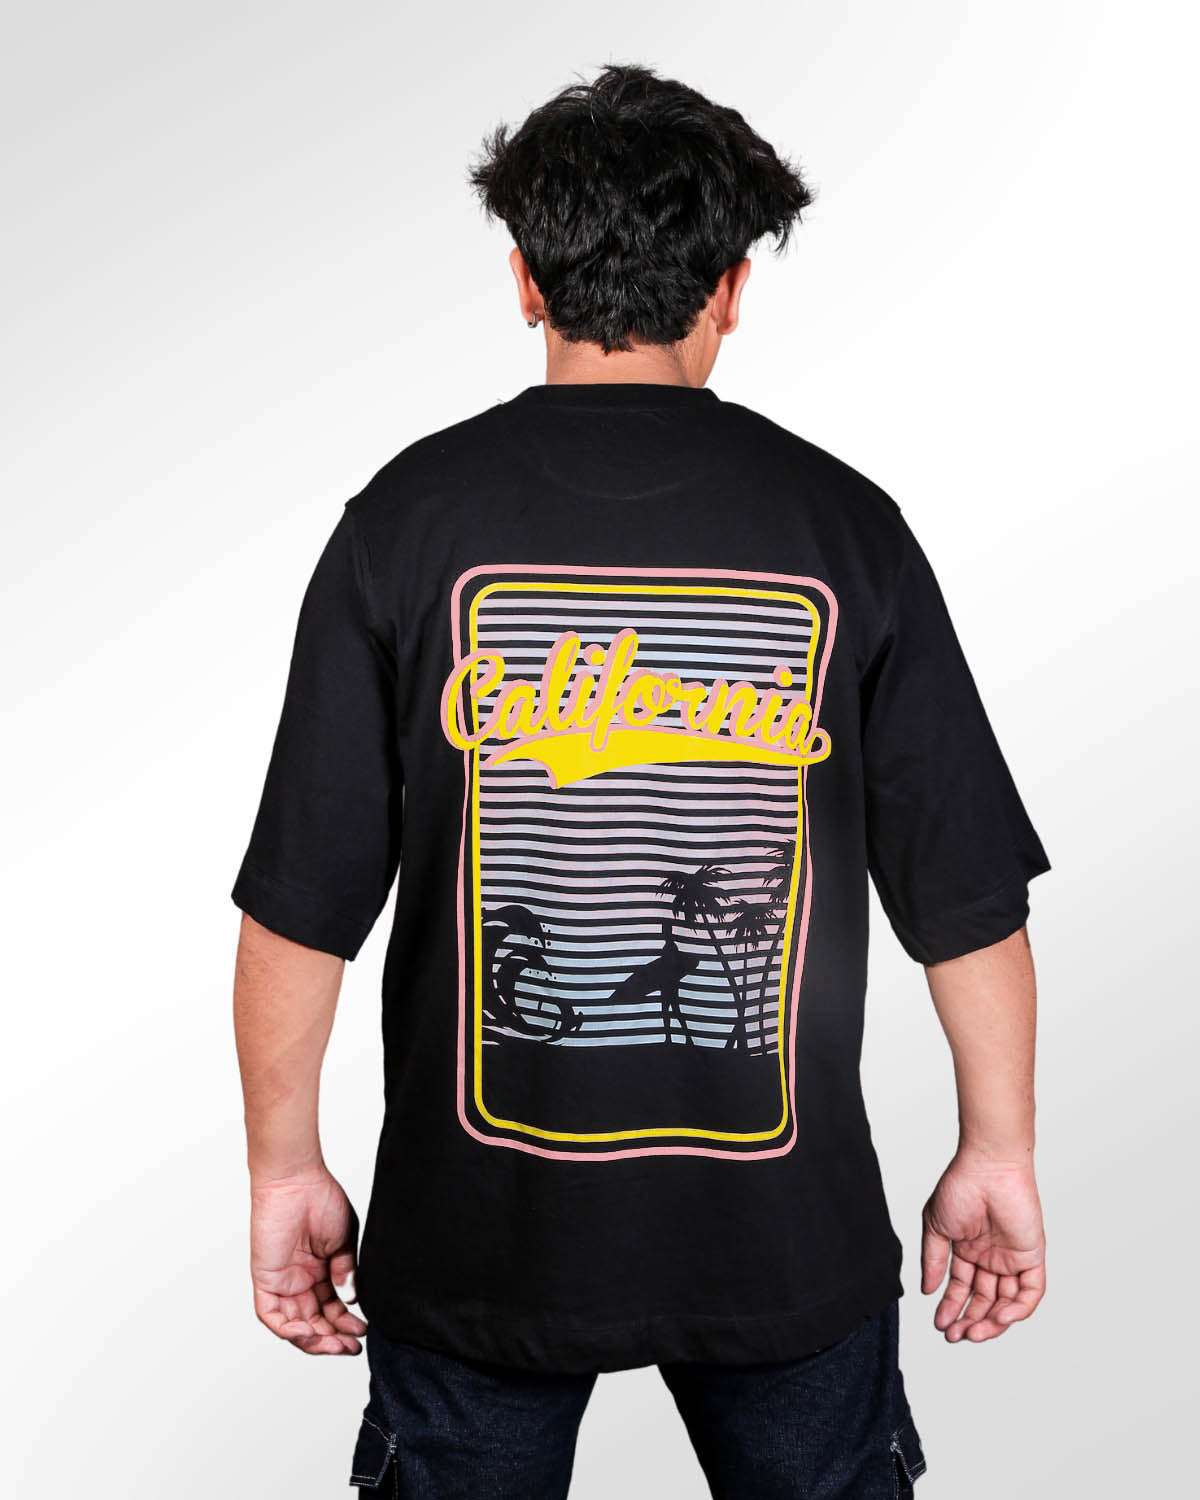 California Summer Vibes Black Oversized T-shirt for Men’s